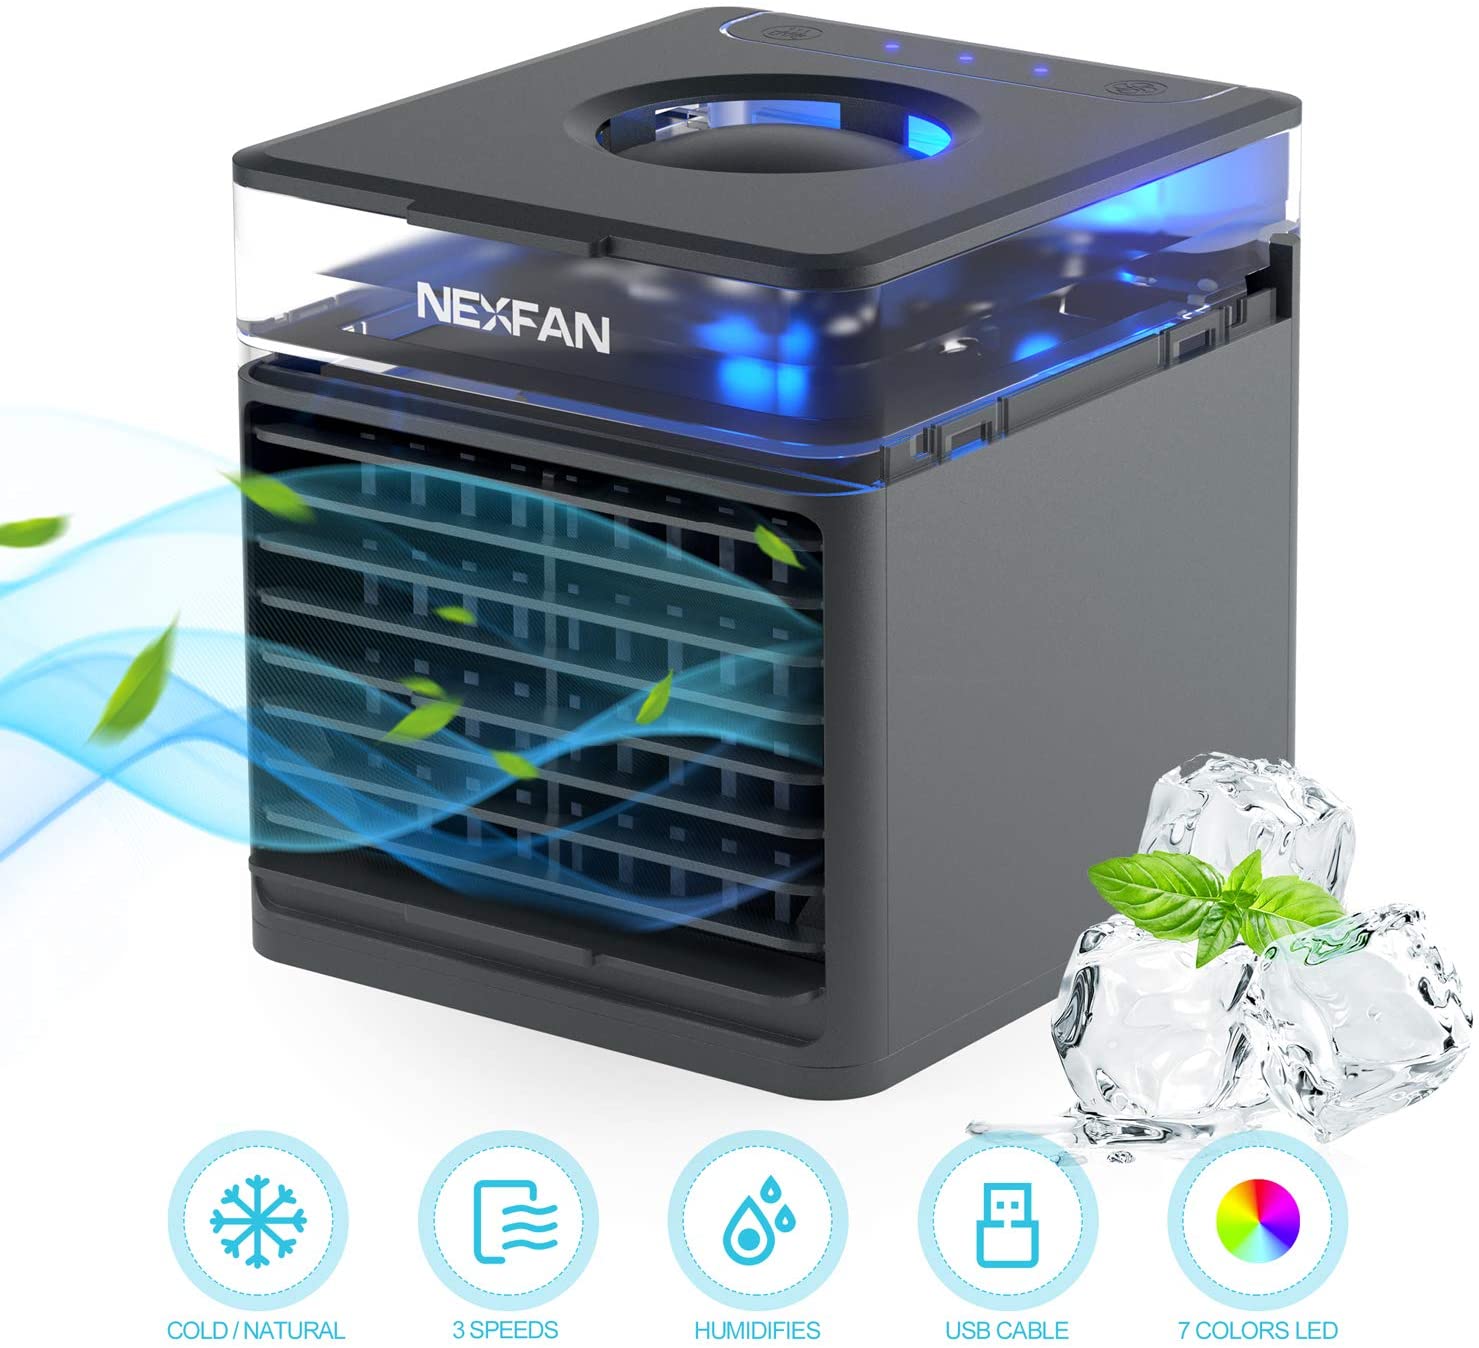 NexFan נייד כף יד רב תכליתי קירור מהיר מיזוג אוויר מאוורר טיהור אוויר לחסל ריח שלושה מצבים טעינת USB מהדורה סטנדרטית לבית משרד - שחור